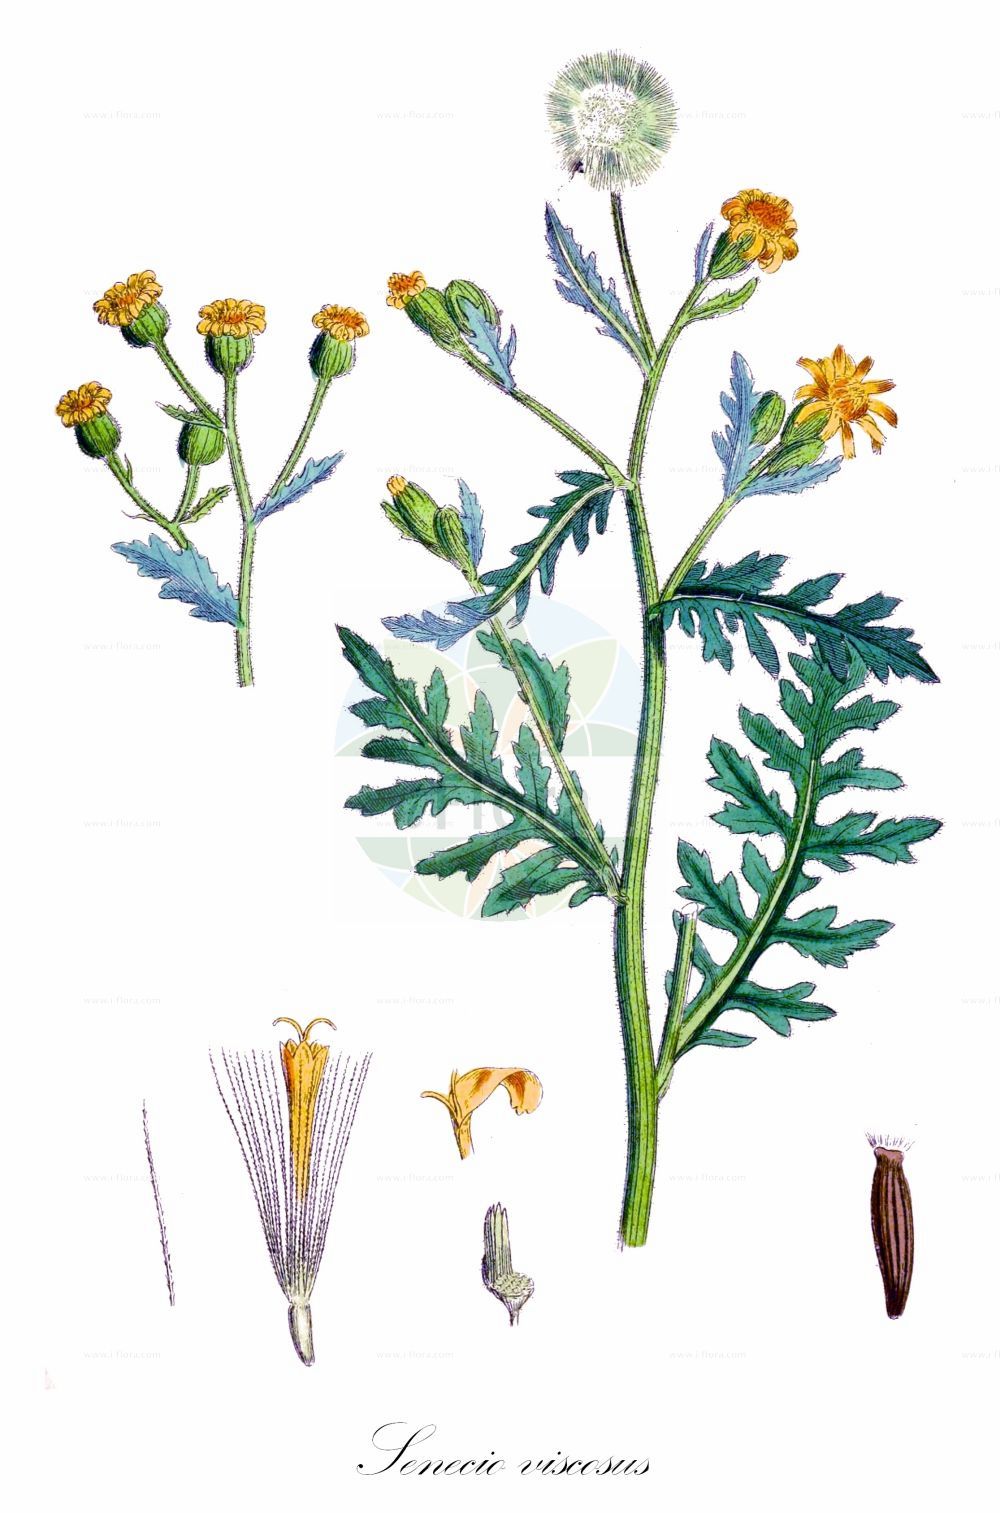 Historische Abbildung von Senecio viscosus (Klebriges Greiskraut - Sticky Groundsel). Das Bild zeigt Blatt, Bluete, Frucht und Same. ---- Historical Drawing of Senecio viscosus (Klebriges Greiskraut - Sticky Groundsel). The image is showing leaf, flower, fruit and seed.(Senecio viscosus,Klebriges Greiskraut,Sticky Groundsel,Senecio calvertii,Senecio viscosus,Klebriges Greiskraut,Sticky Groundsel,Fetid Groundsel,Sticky Ragwort,Stinking Groundsel,Senecio,Greiskraut,Ragwort,Asteraceae,Korbblütengewächse,Daisy family,Blatt,Bluete,Frucht,Same,leaf,flower,fruit,seed,Sowerby (1790-1813))